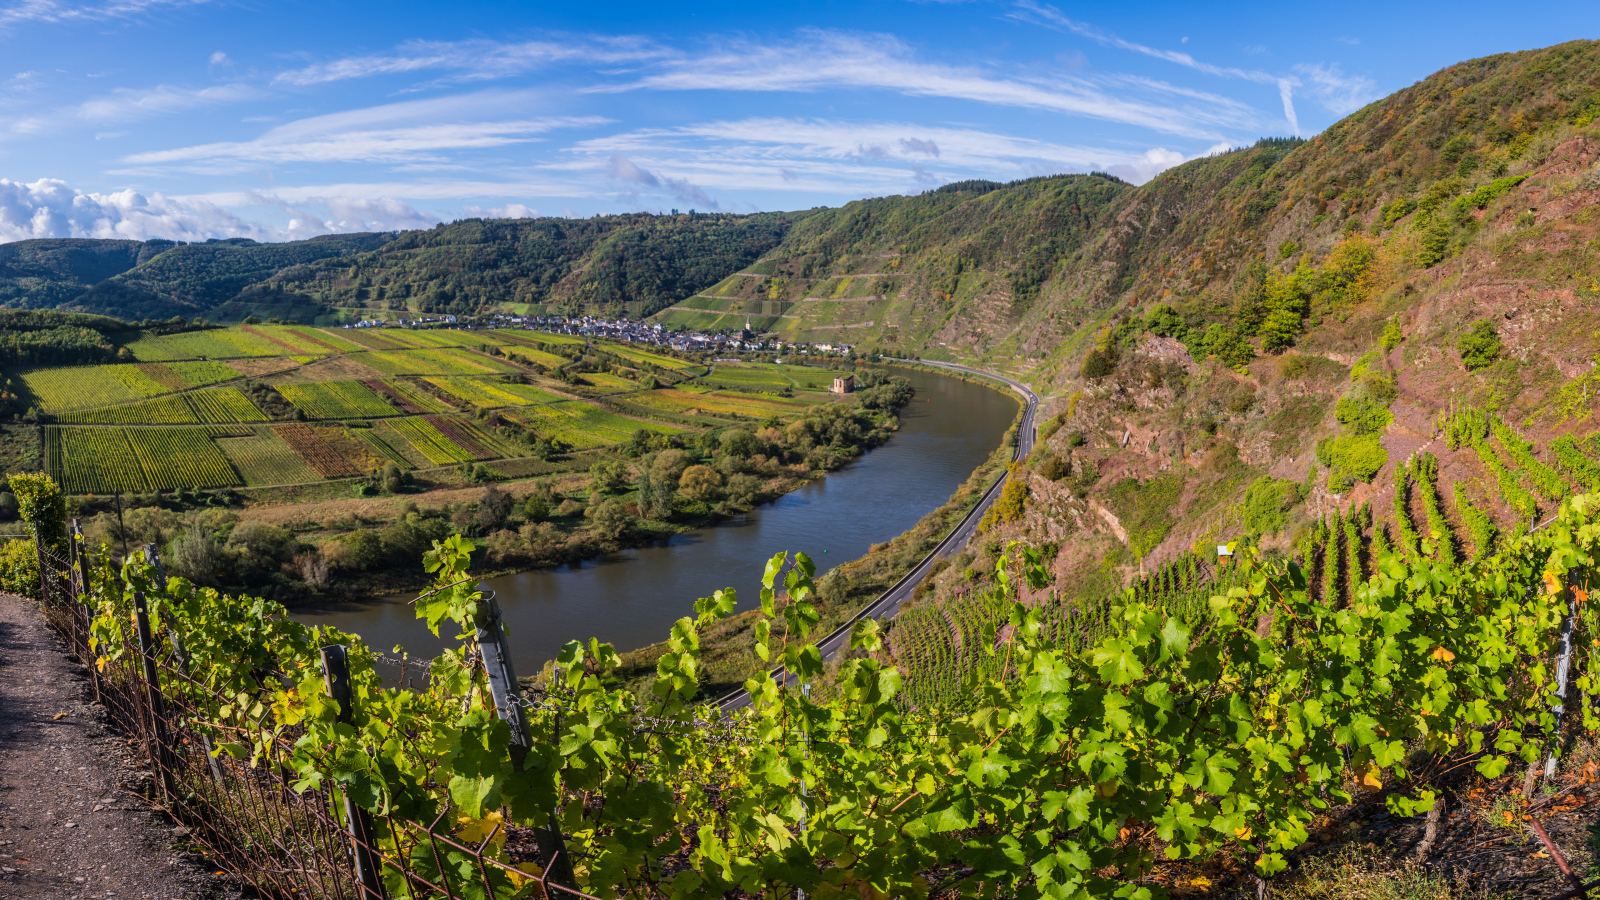 Вид на виноградники у реки под голубым небом, Германия 